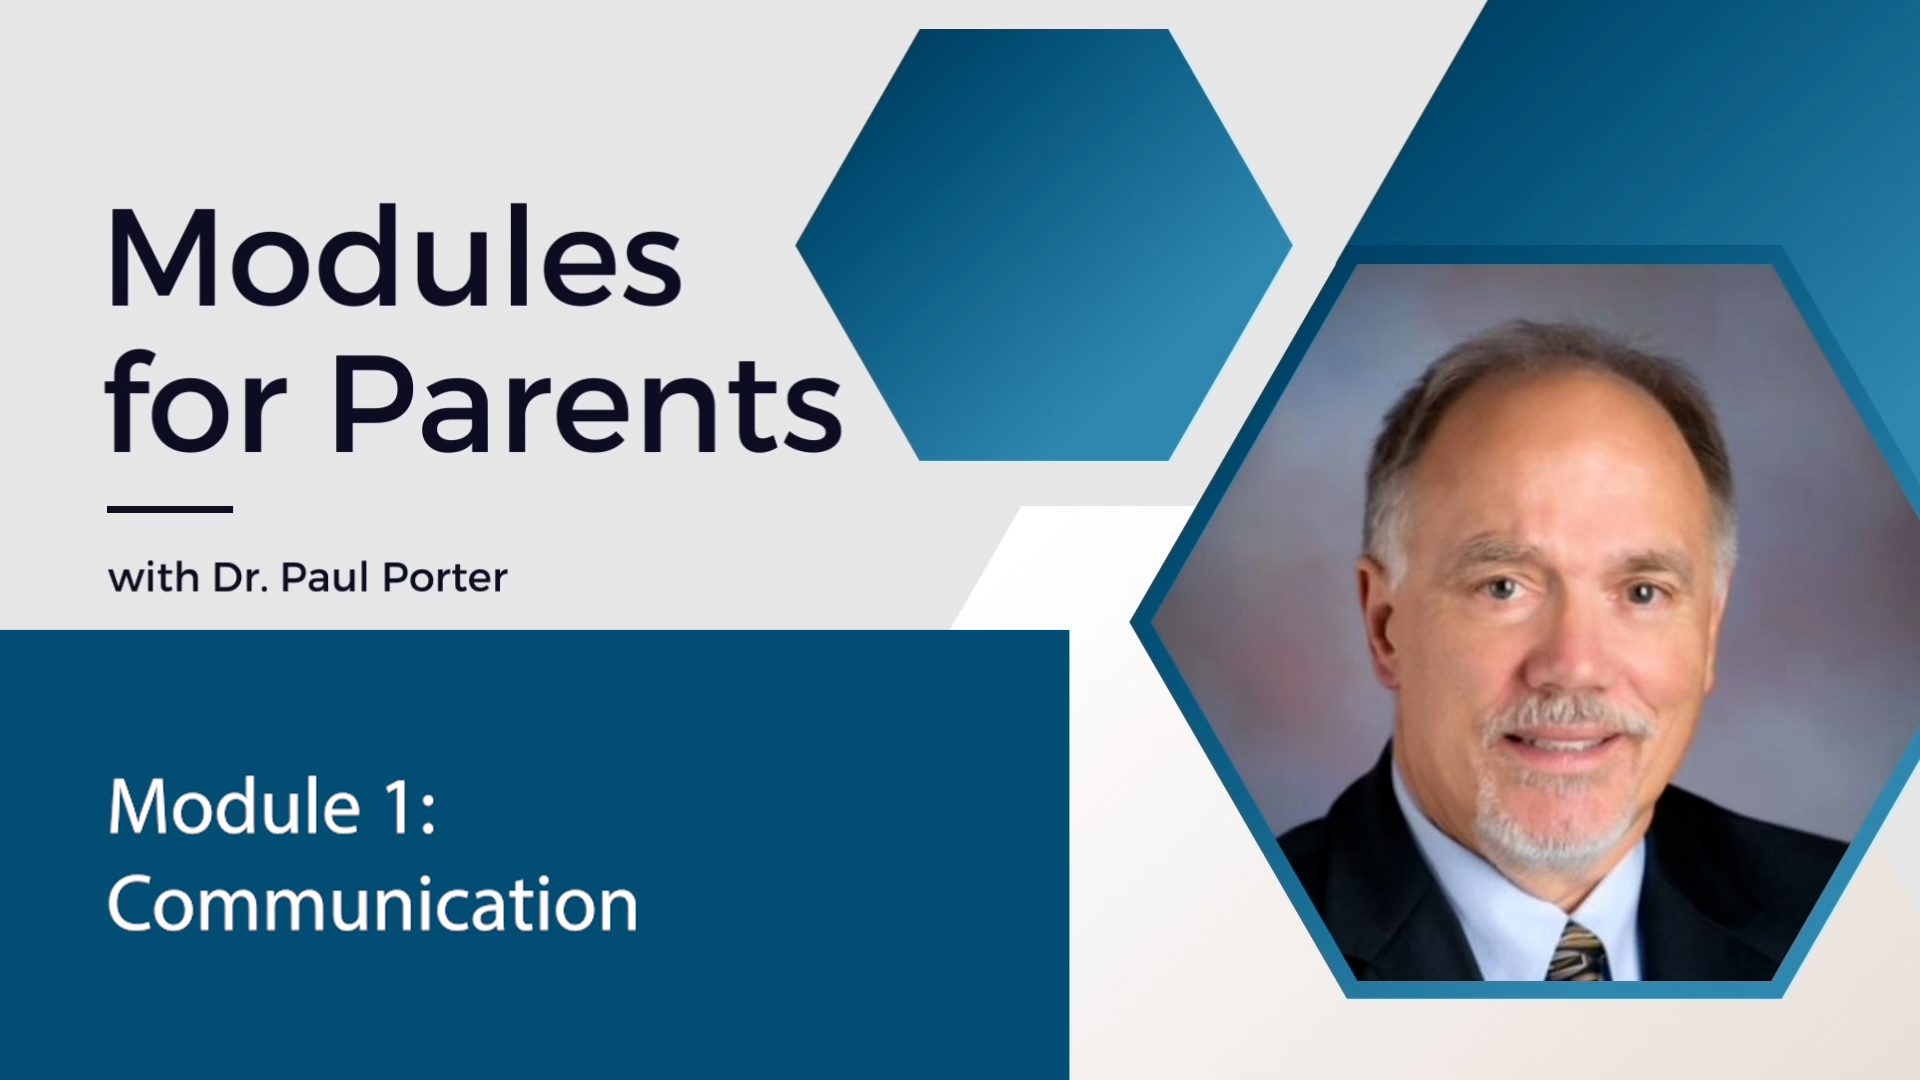 Modules for Parents - Dr. Paul Porter: Module 1